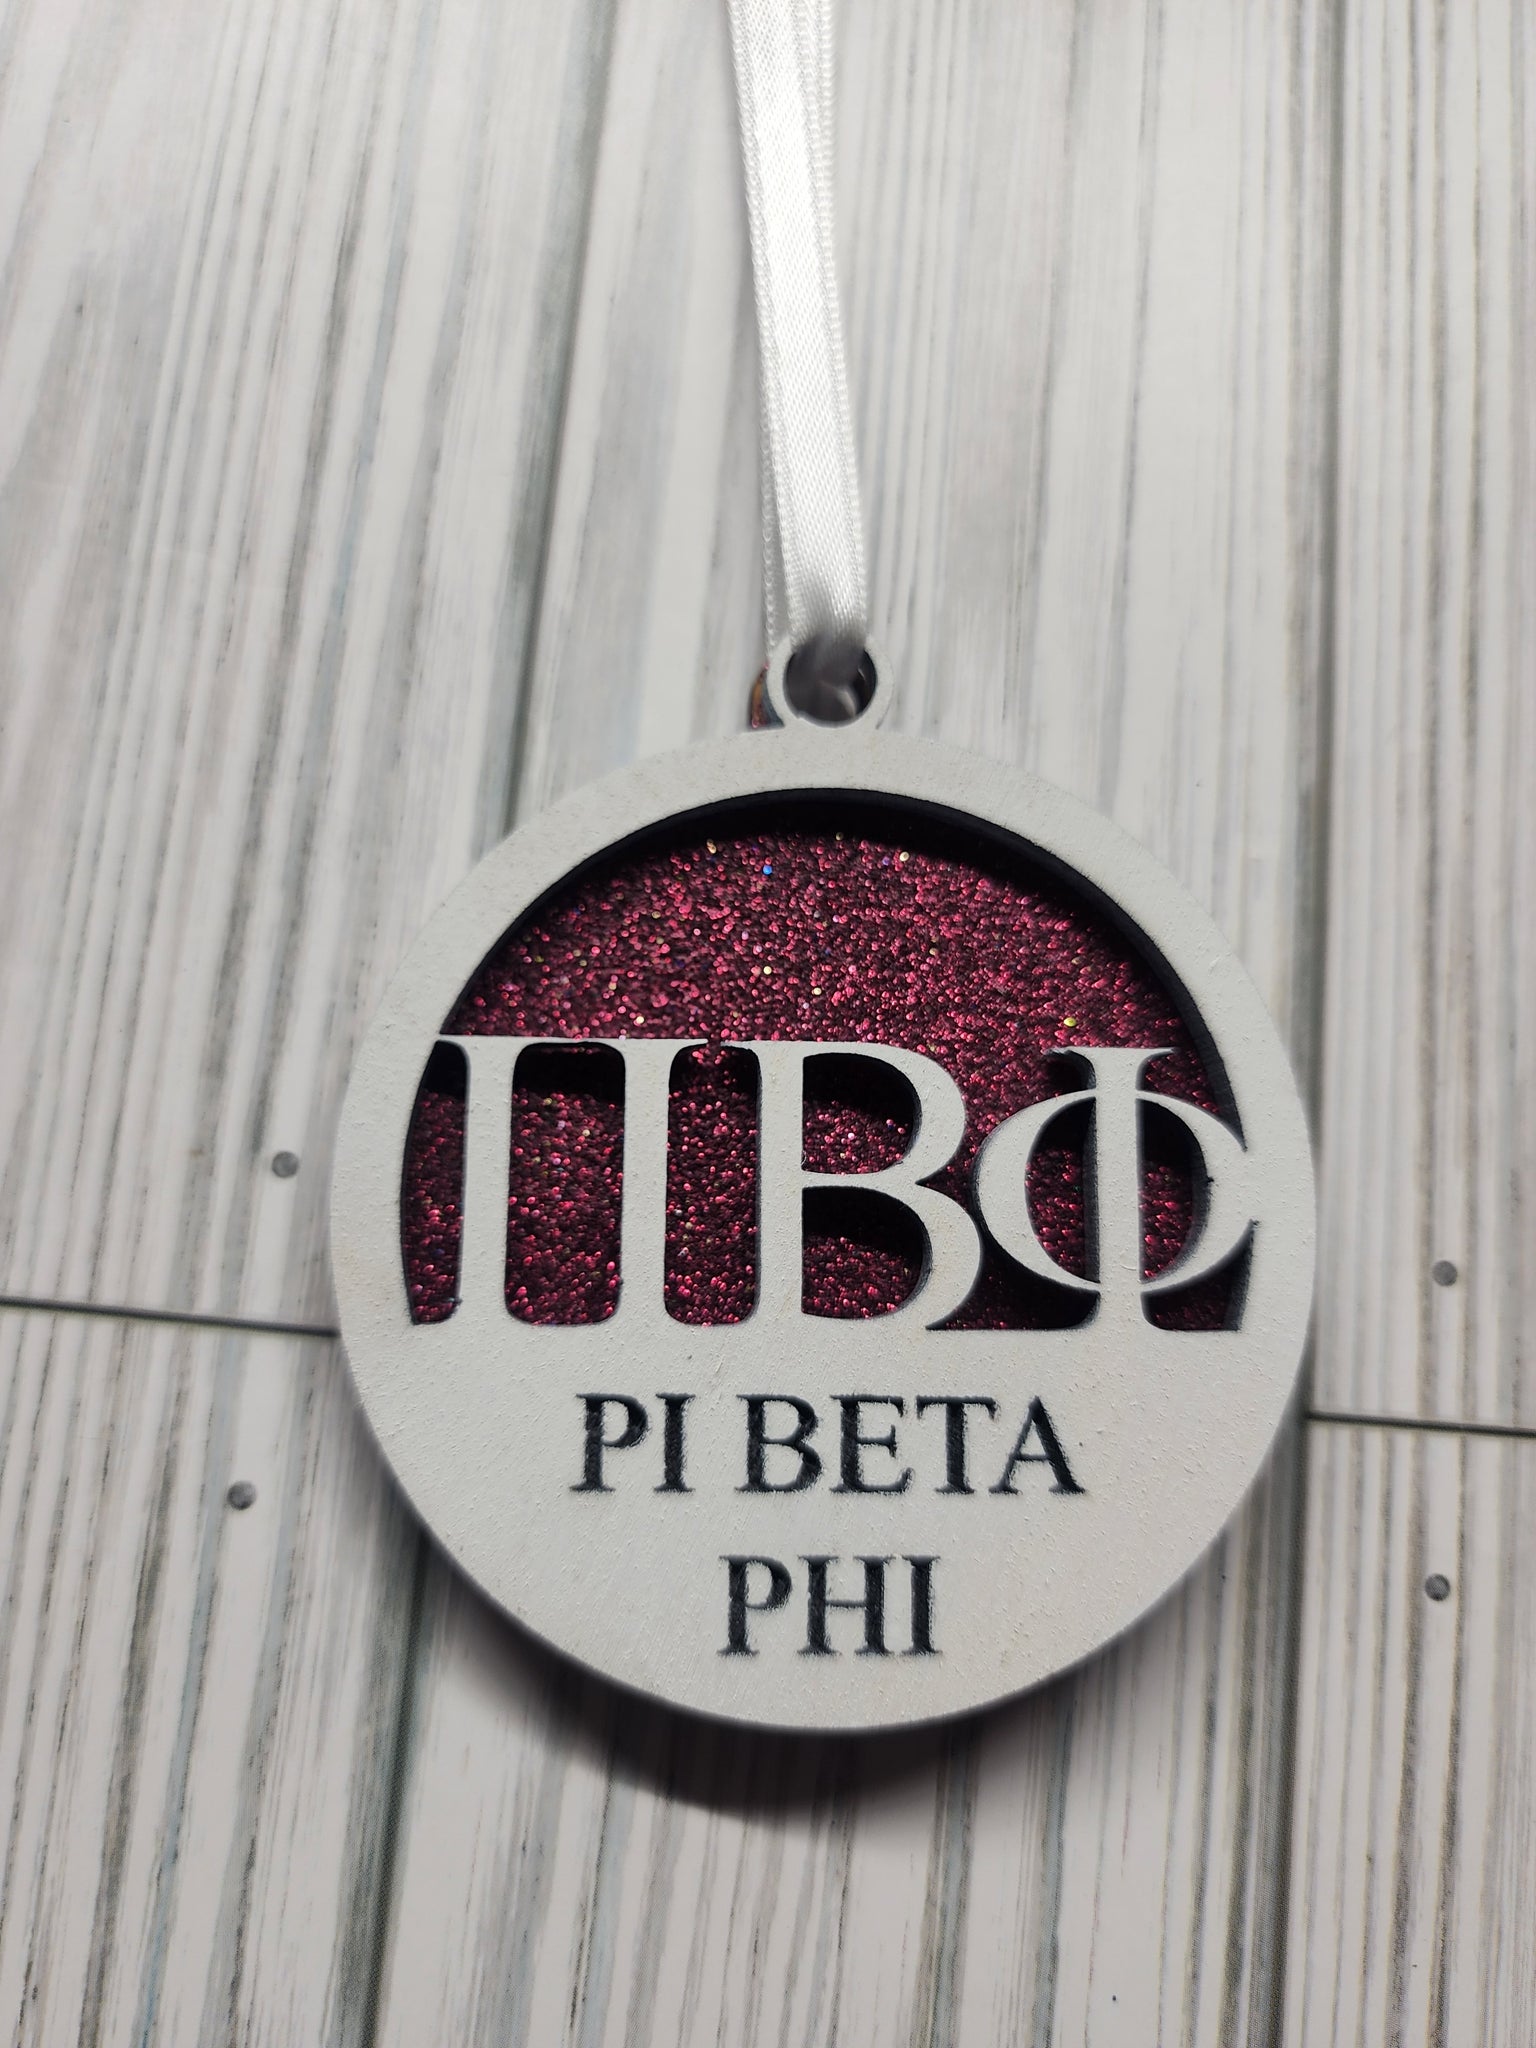 Pi Beta Phi Christmas Ornament